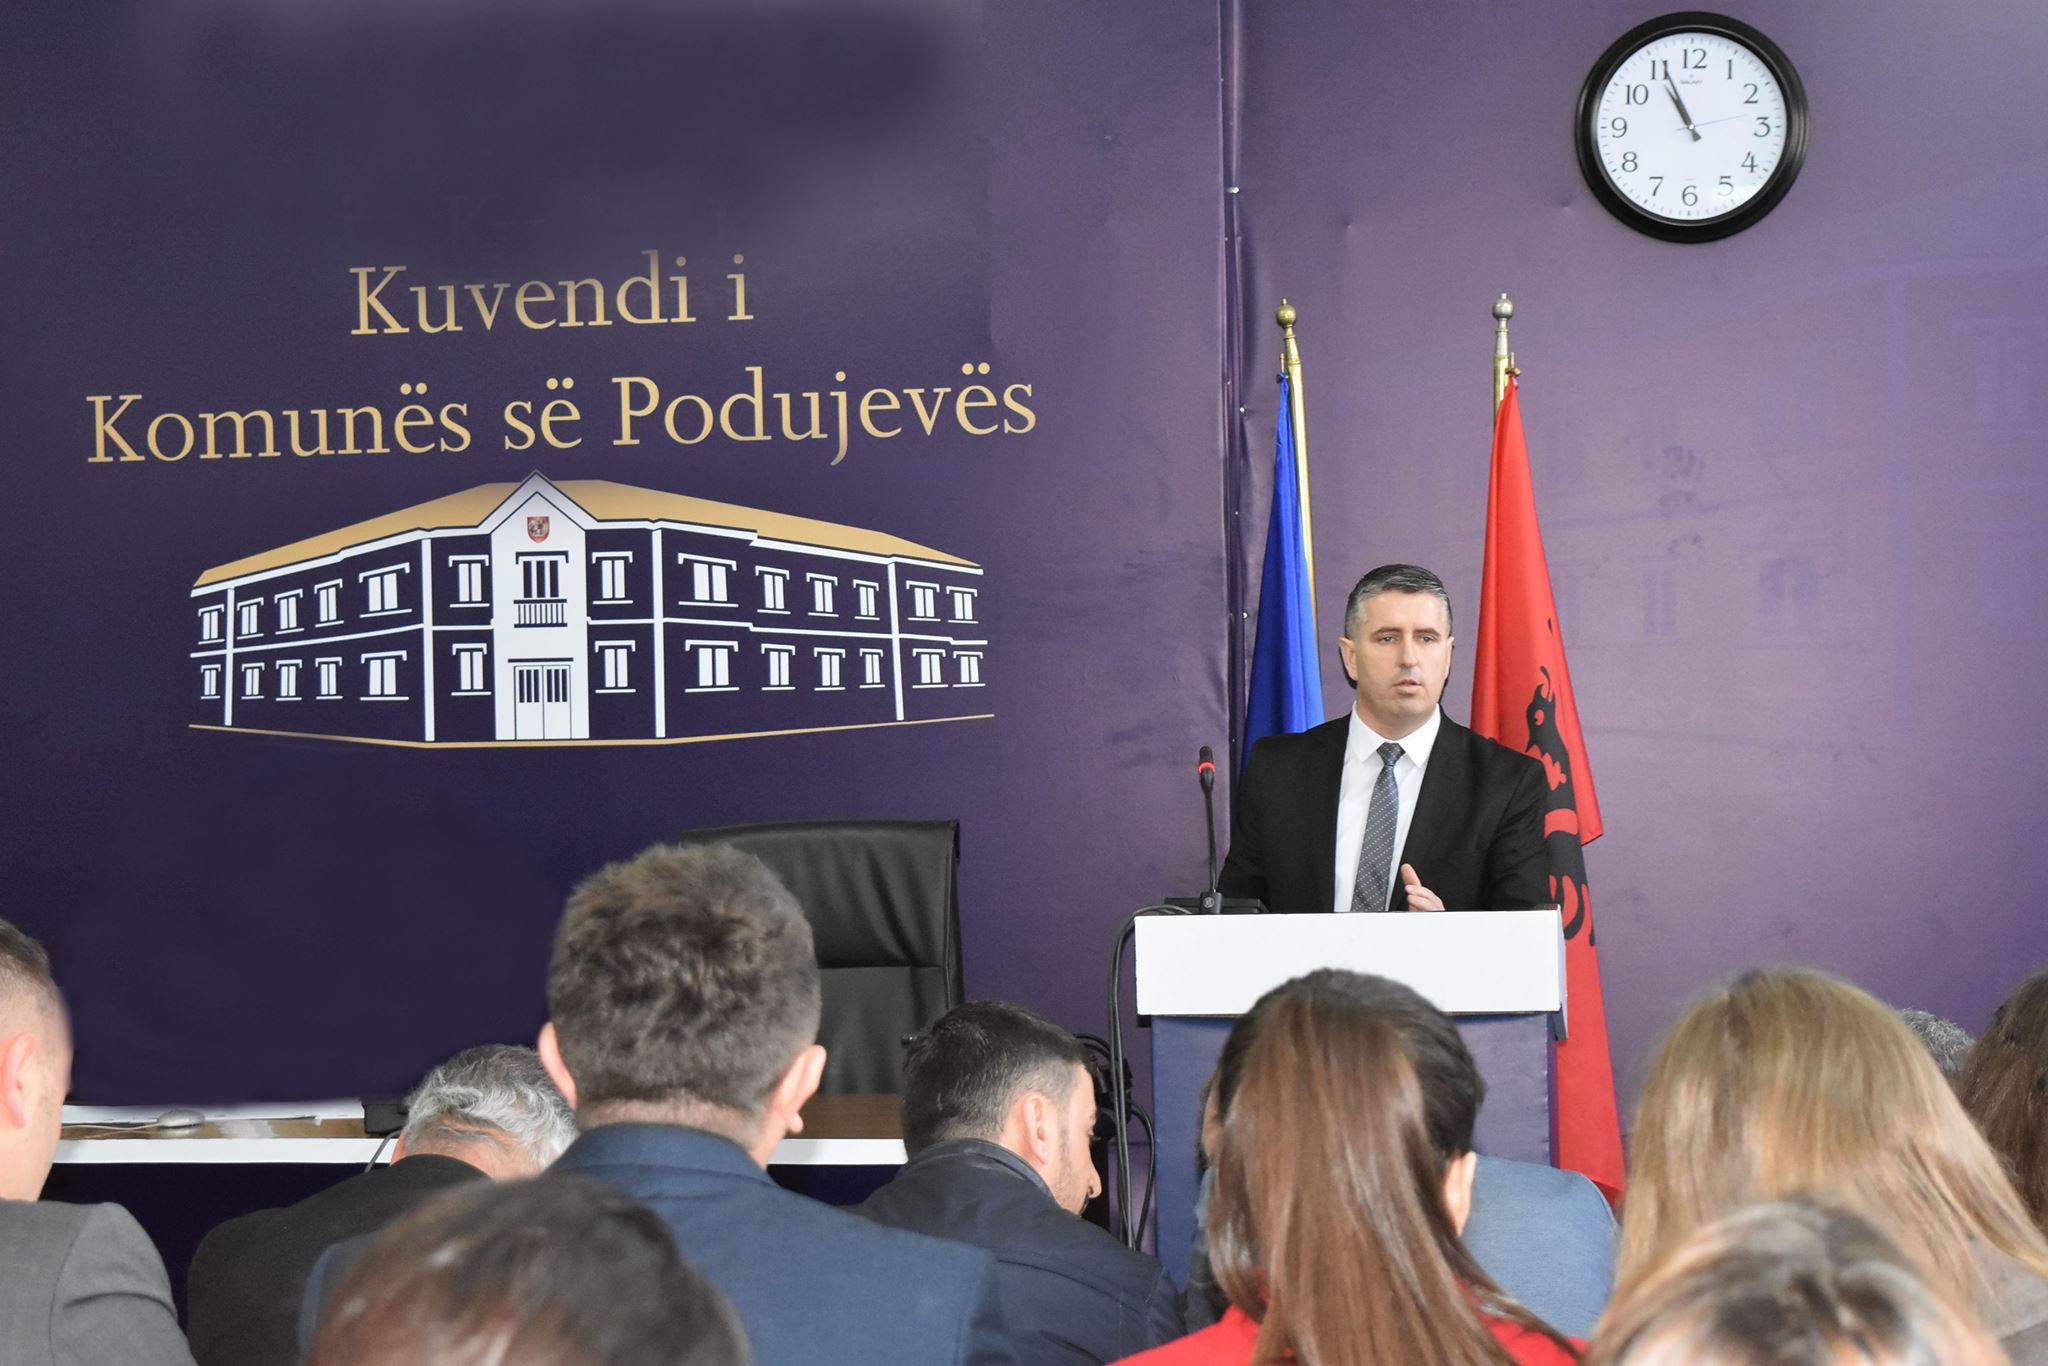  Avni Fetahu: Në Komunën e Podujevës po zhvillohet vetëm një industri, ajo e korrupsionit